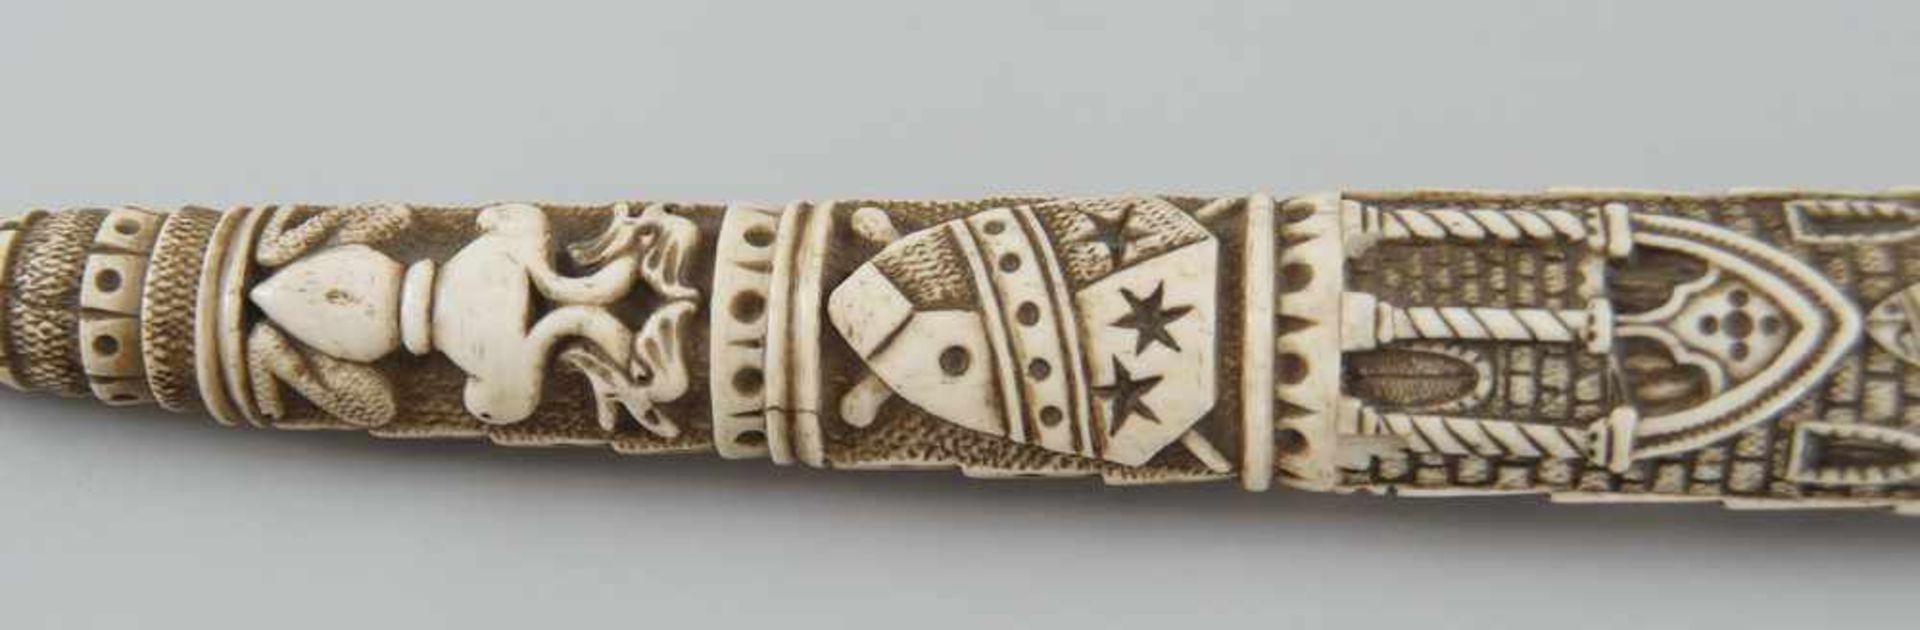 Schwert mit fein geschnitzter Scheide und Griff aus Elfenbein, Klinge aus Eisen, 19. JH,mit Zettel - Bild 11 aus 11